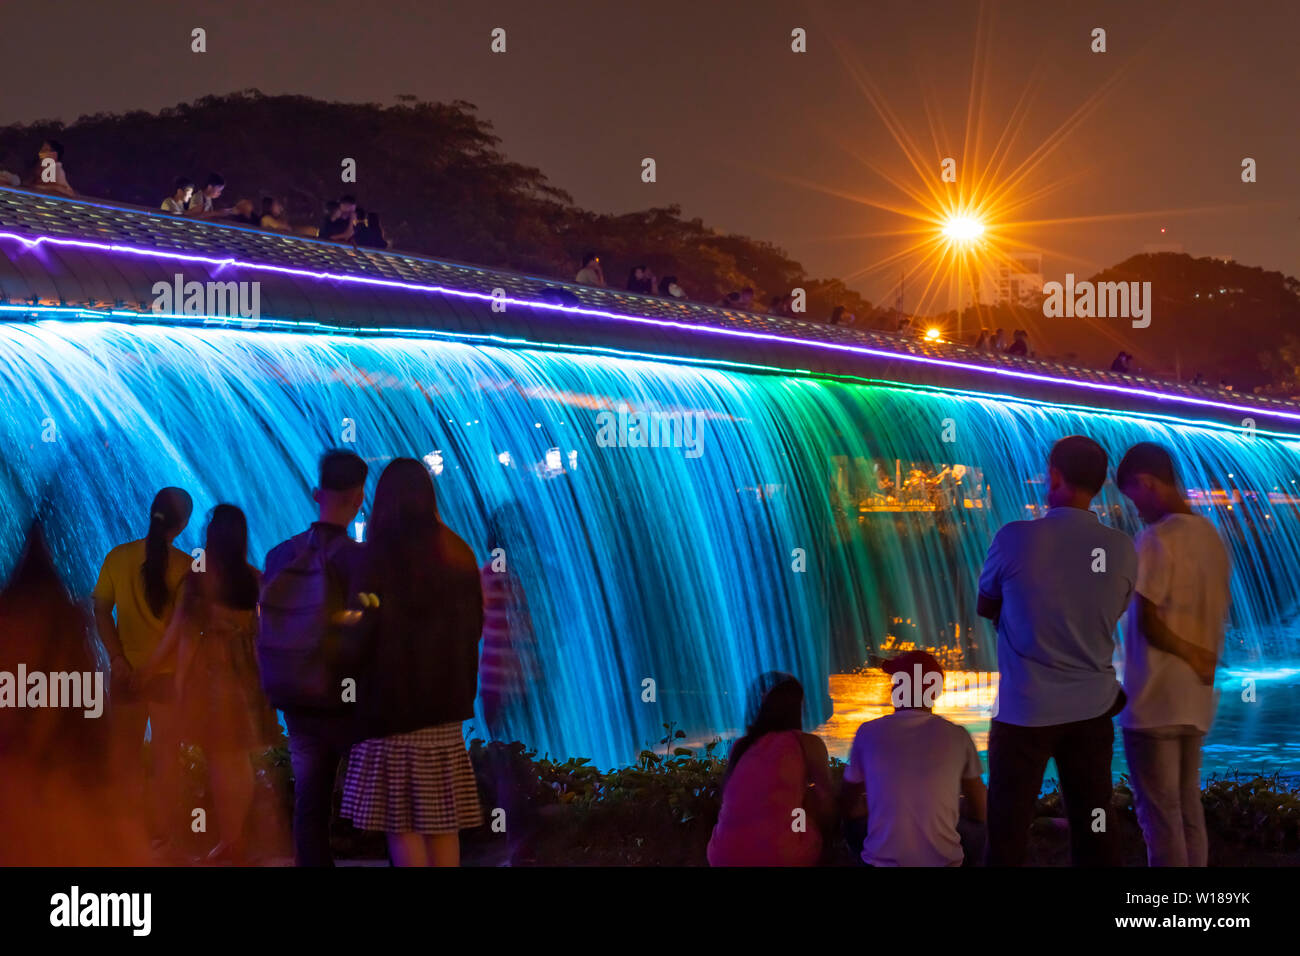 Personas disfrutando del Starlight Bridge o Puente en sao anh Hung Phu Mi distrito de la ciudad de Ho Chi Minh, Vietnam. Es una cascada iluminada solarpowered Foto de stock